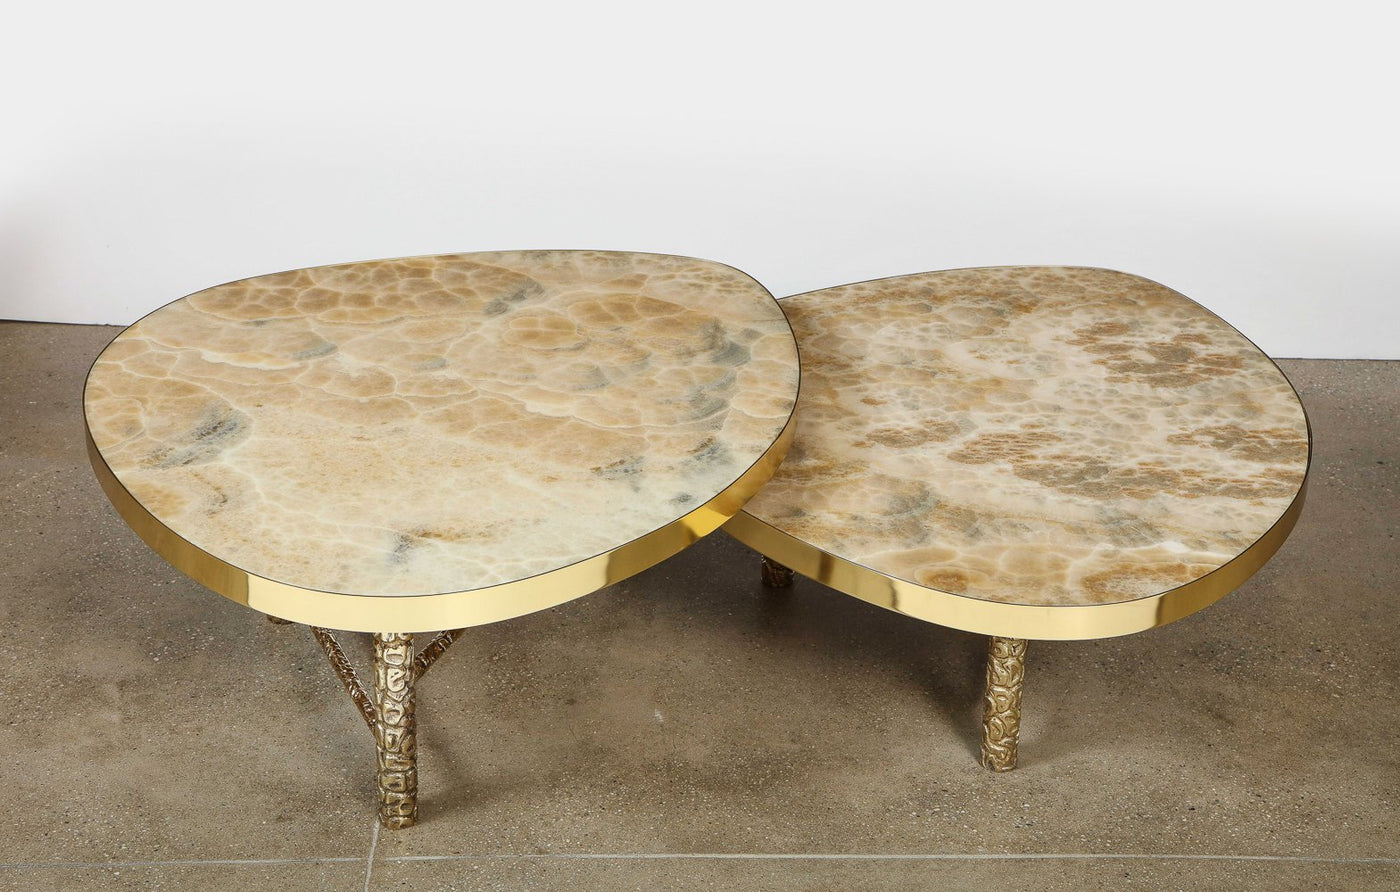 Studio-made "Meteoris" Tables by Arriau